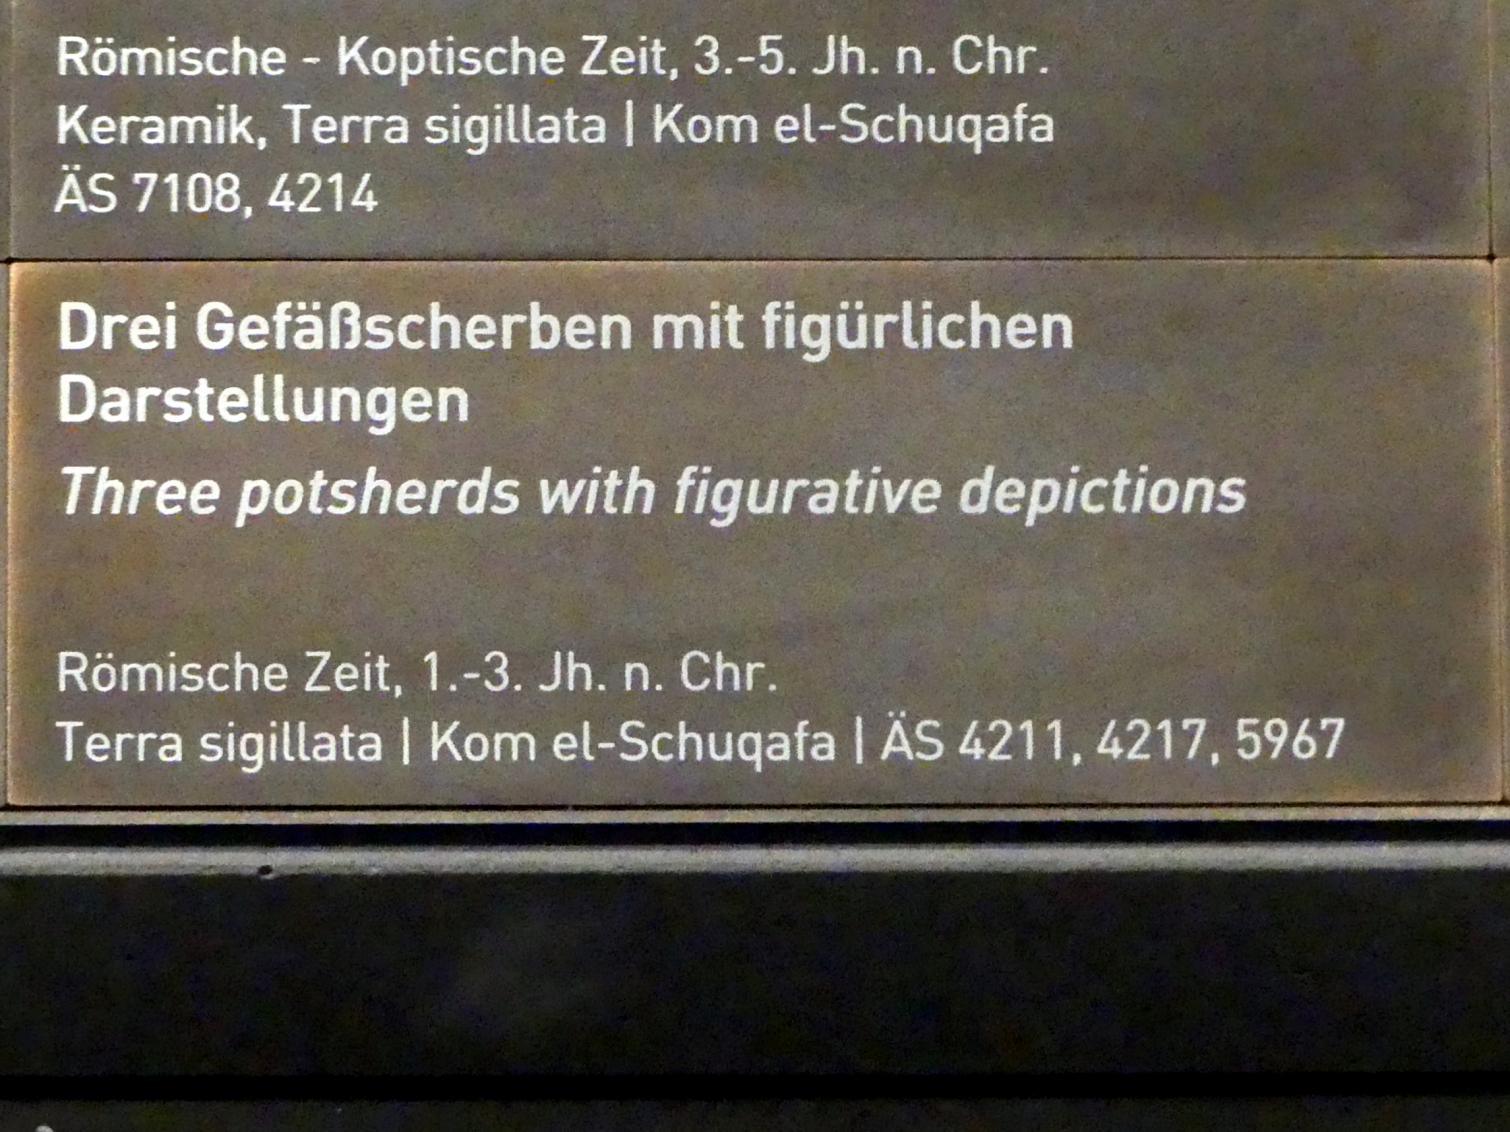 Drei Gefäßscherben mit figürlichen Darstellungen, Römische Kaiserzeit, 27 v. Chr. - 54 n. Chr., 1 - 300, Bild 3/3